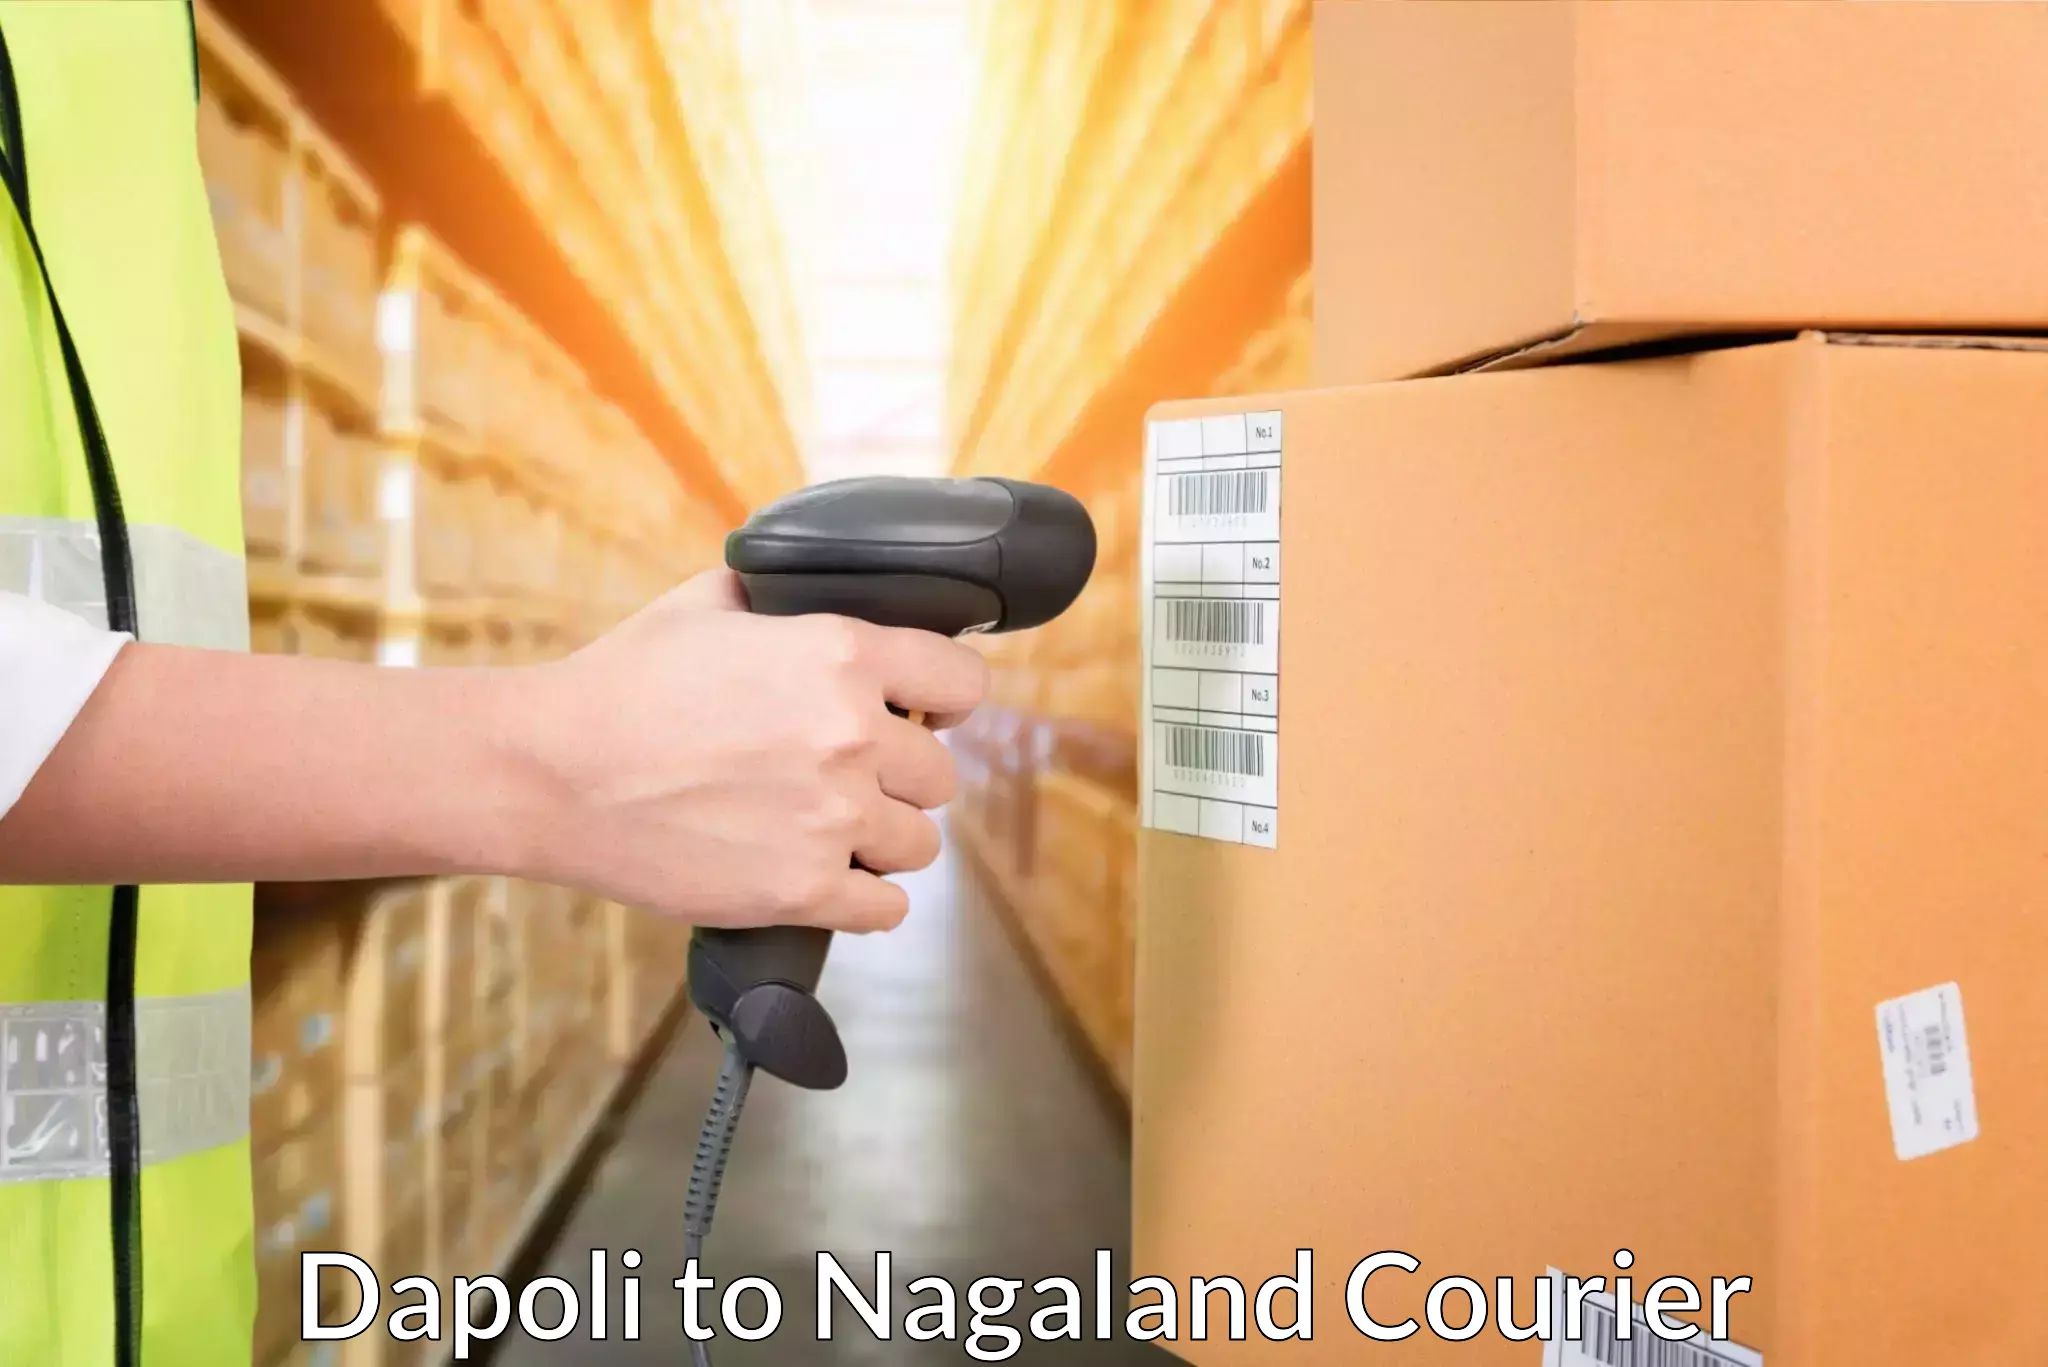 Next-generation courier services Dapoli to Kohima